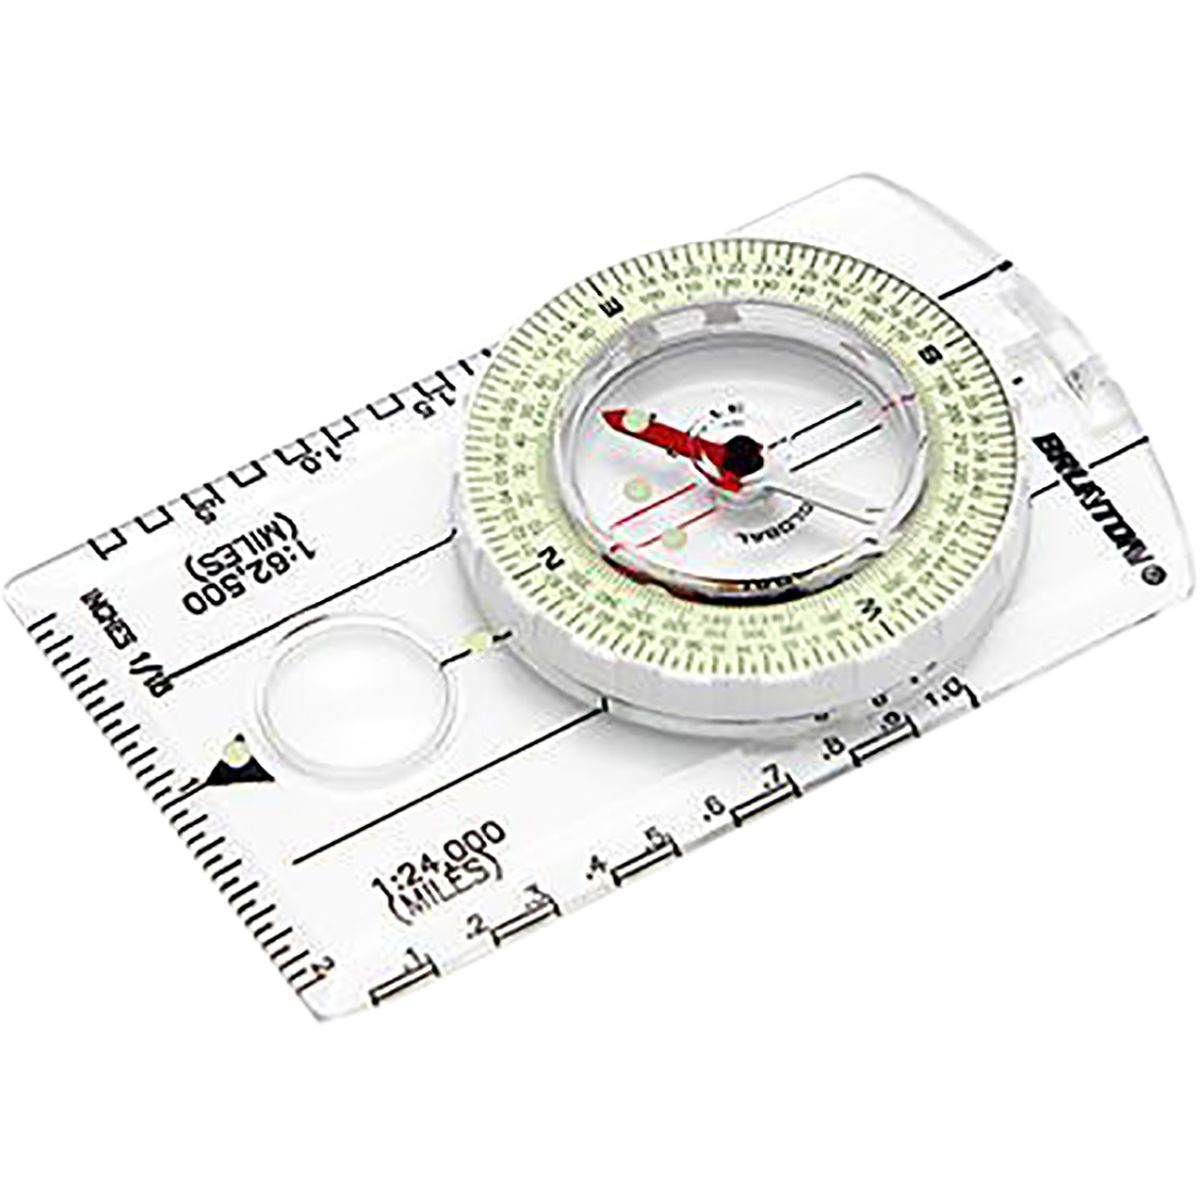 Brunton Truarc 8010 Compass